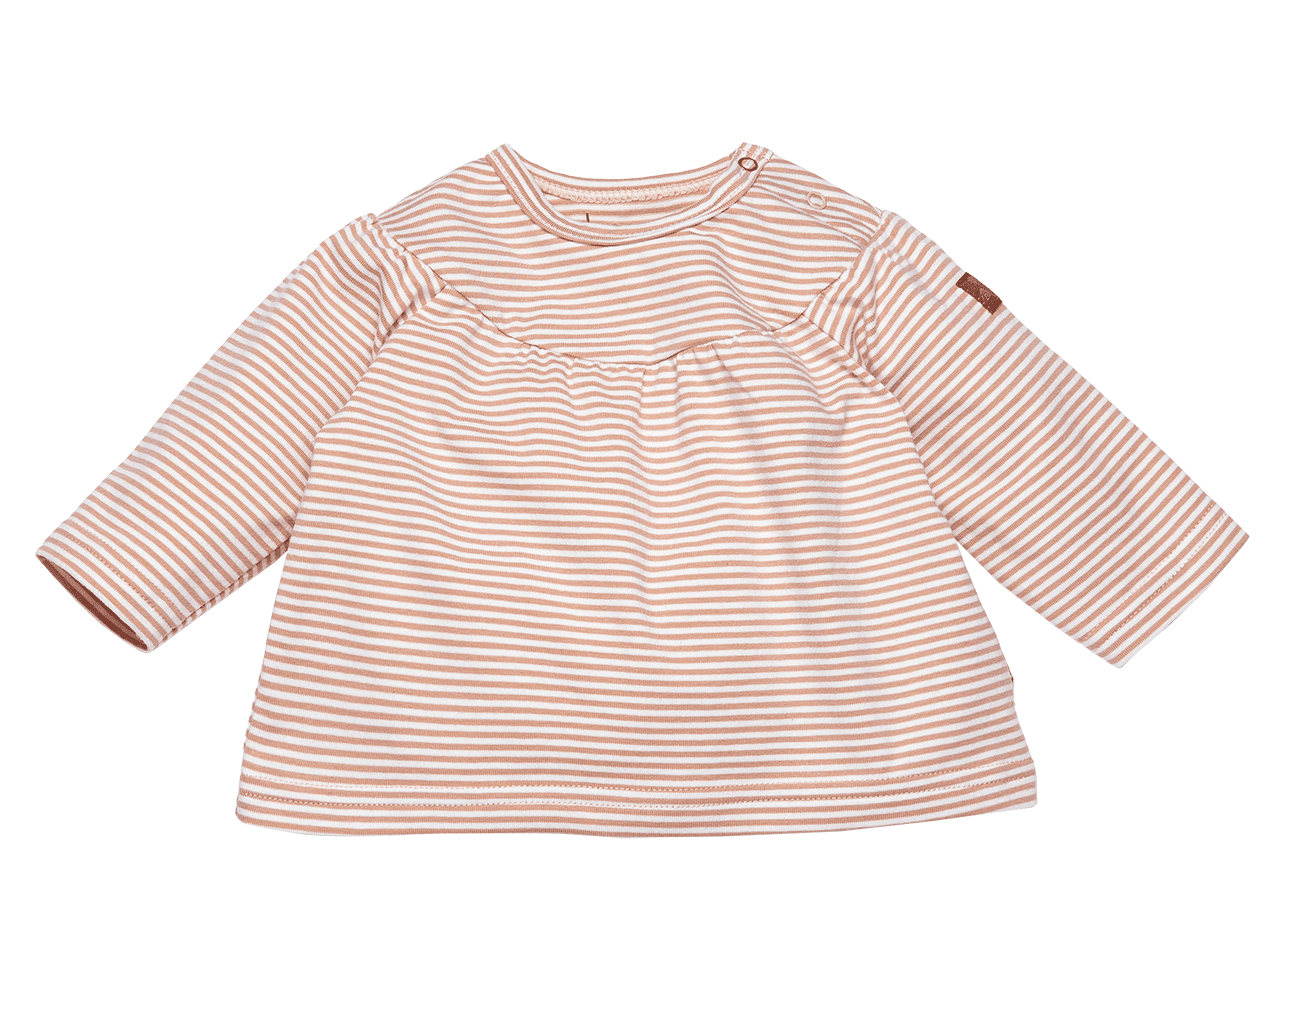 Shirt Longsleeve Striped – Dusty Rose